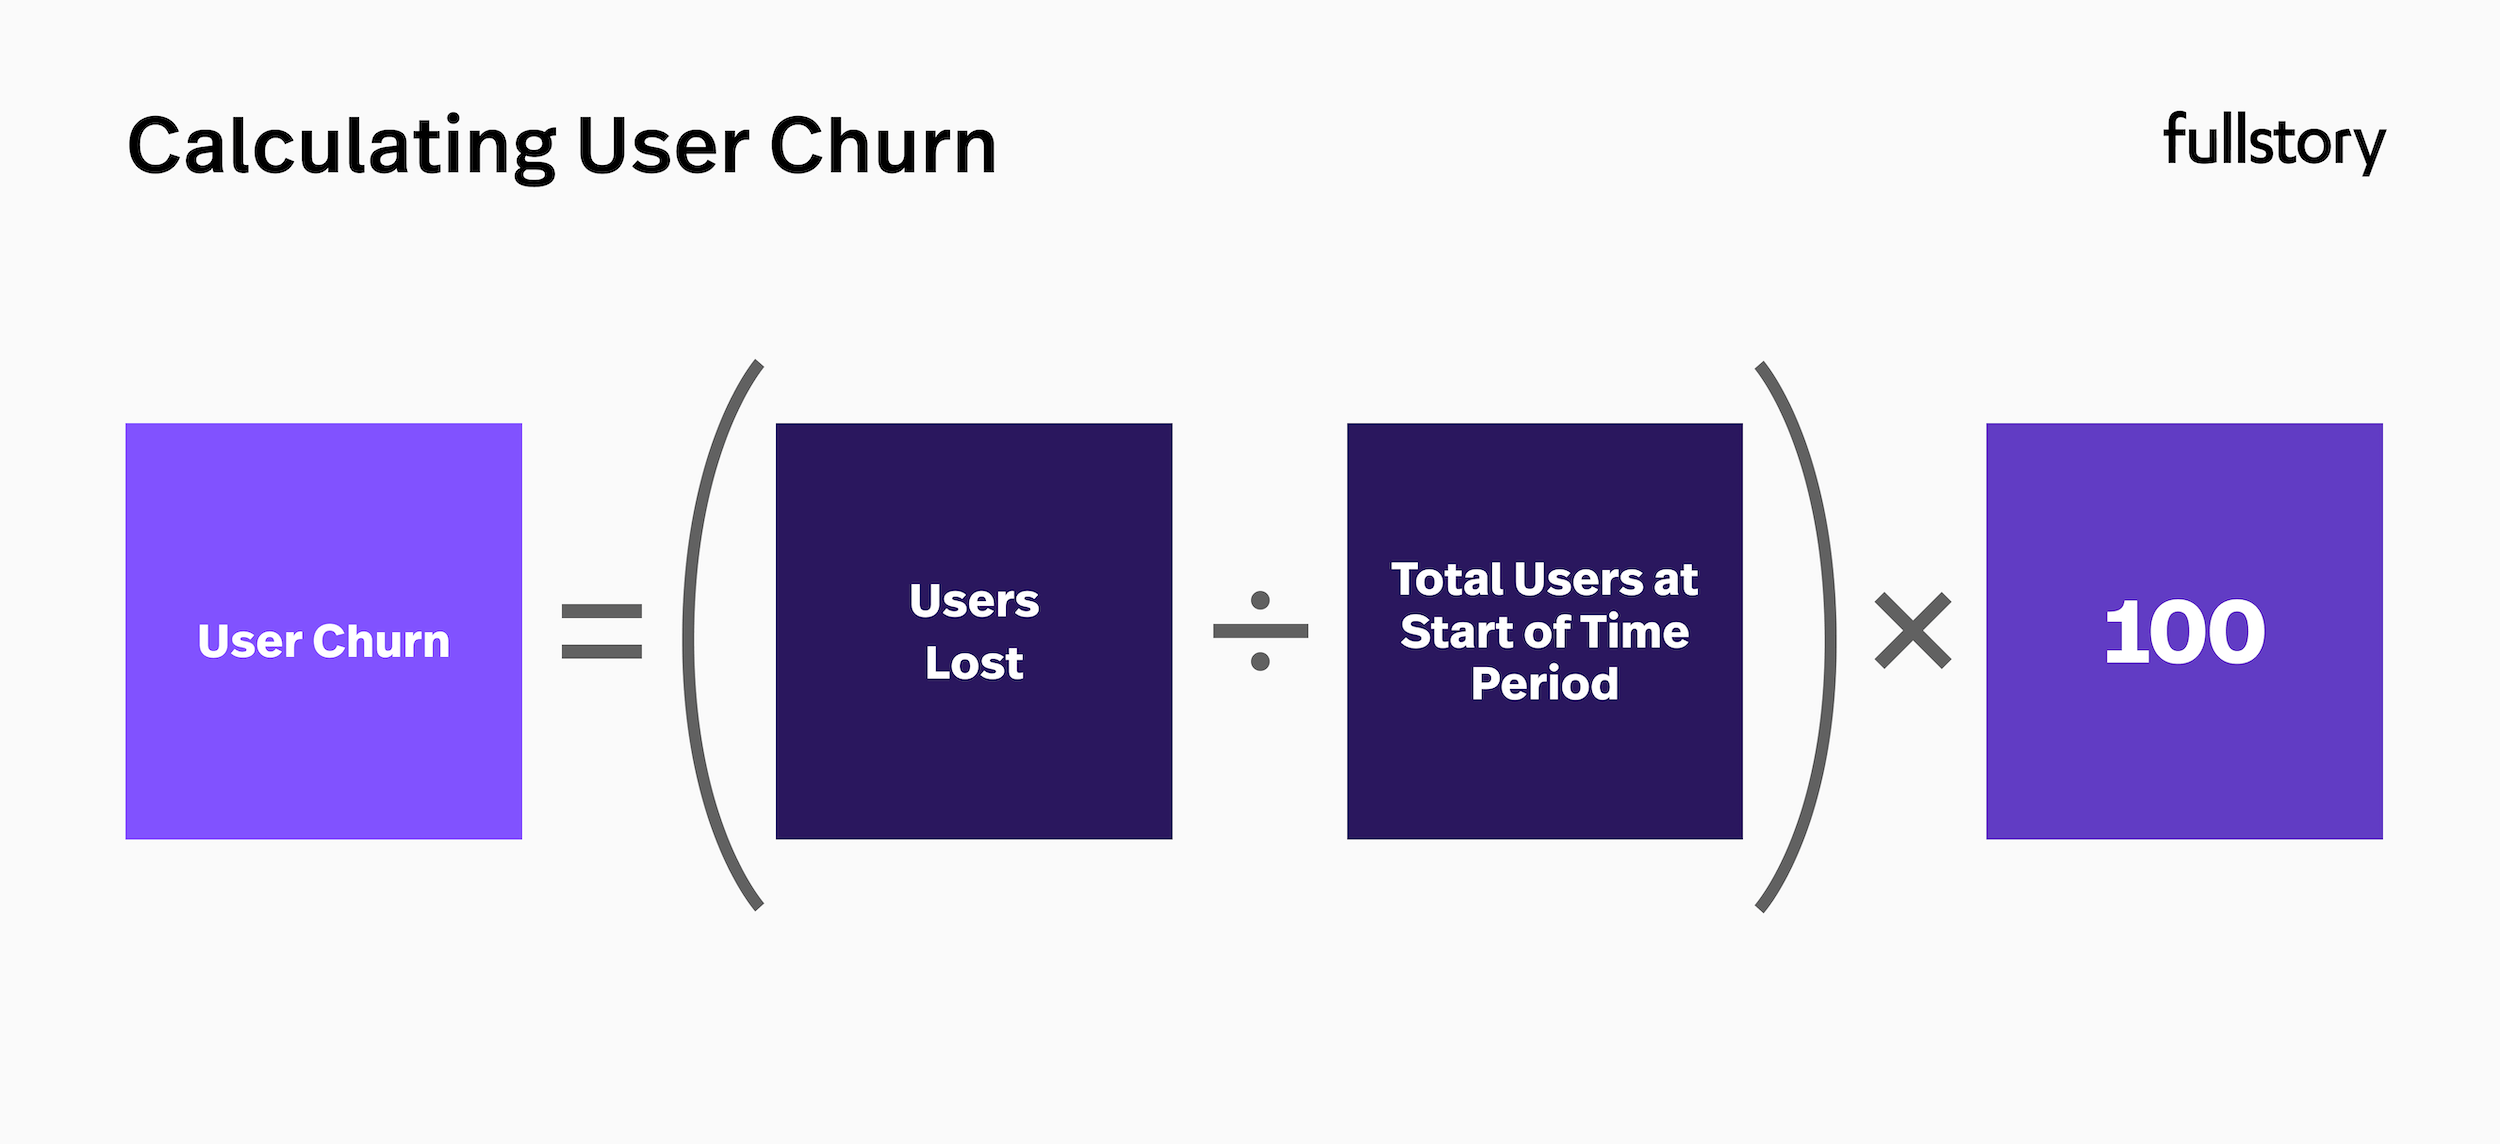 User churn rate